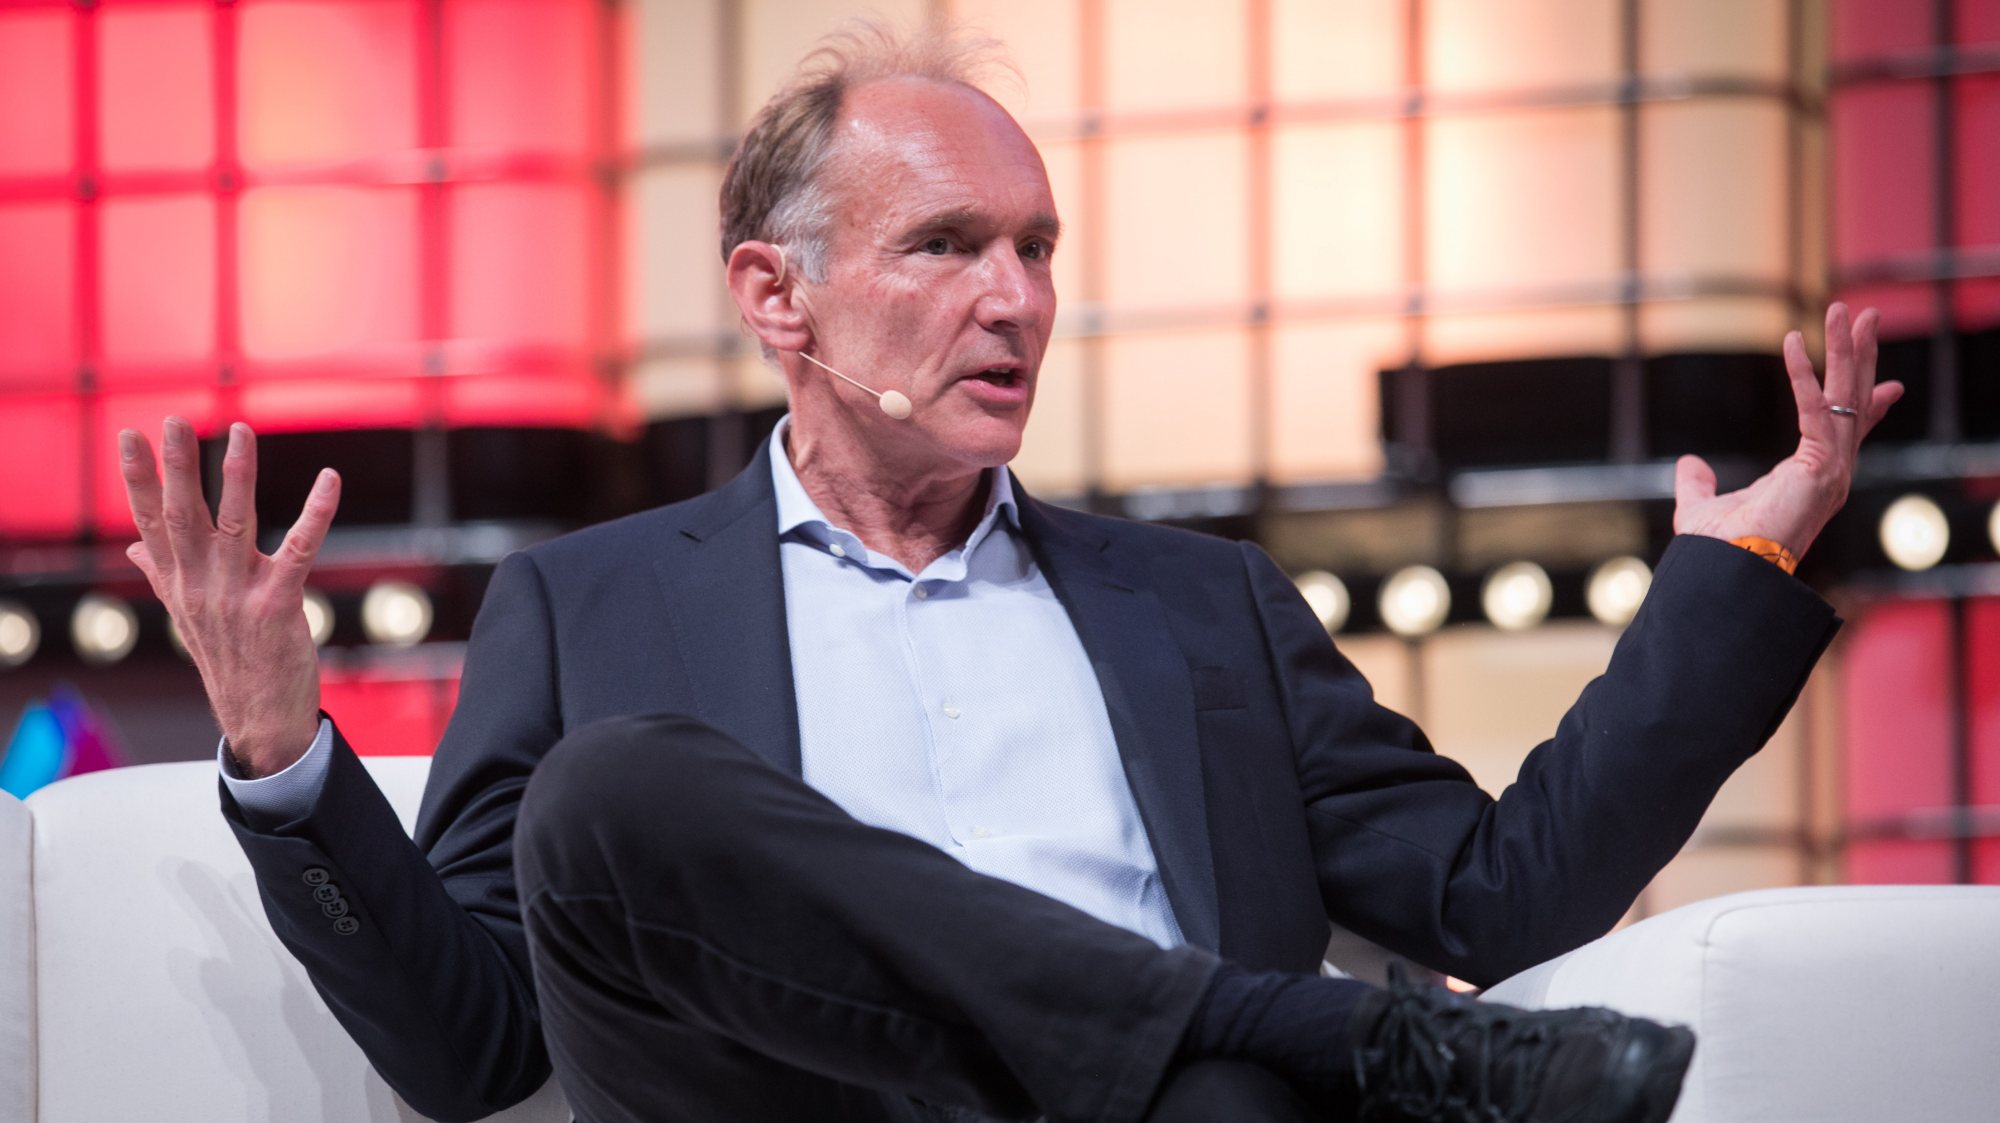 &quot;As consequências desta exclusão afetam a todos&quot;, diz Tim Berners-Lee, criador da World Wide Web